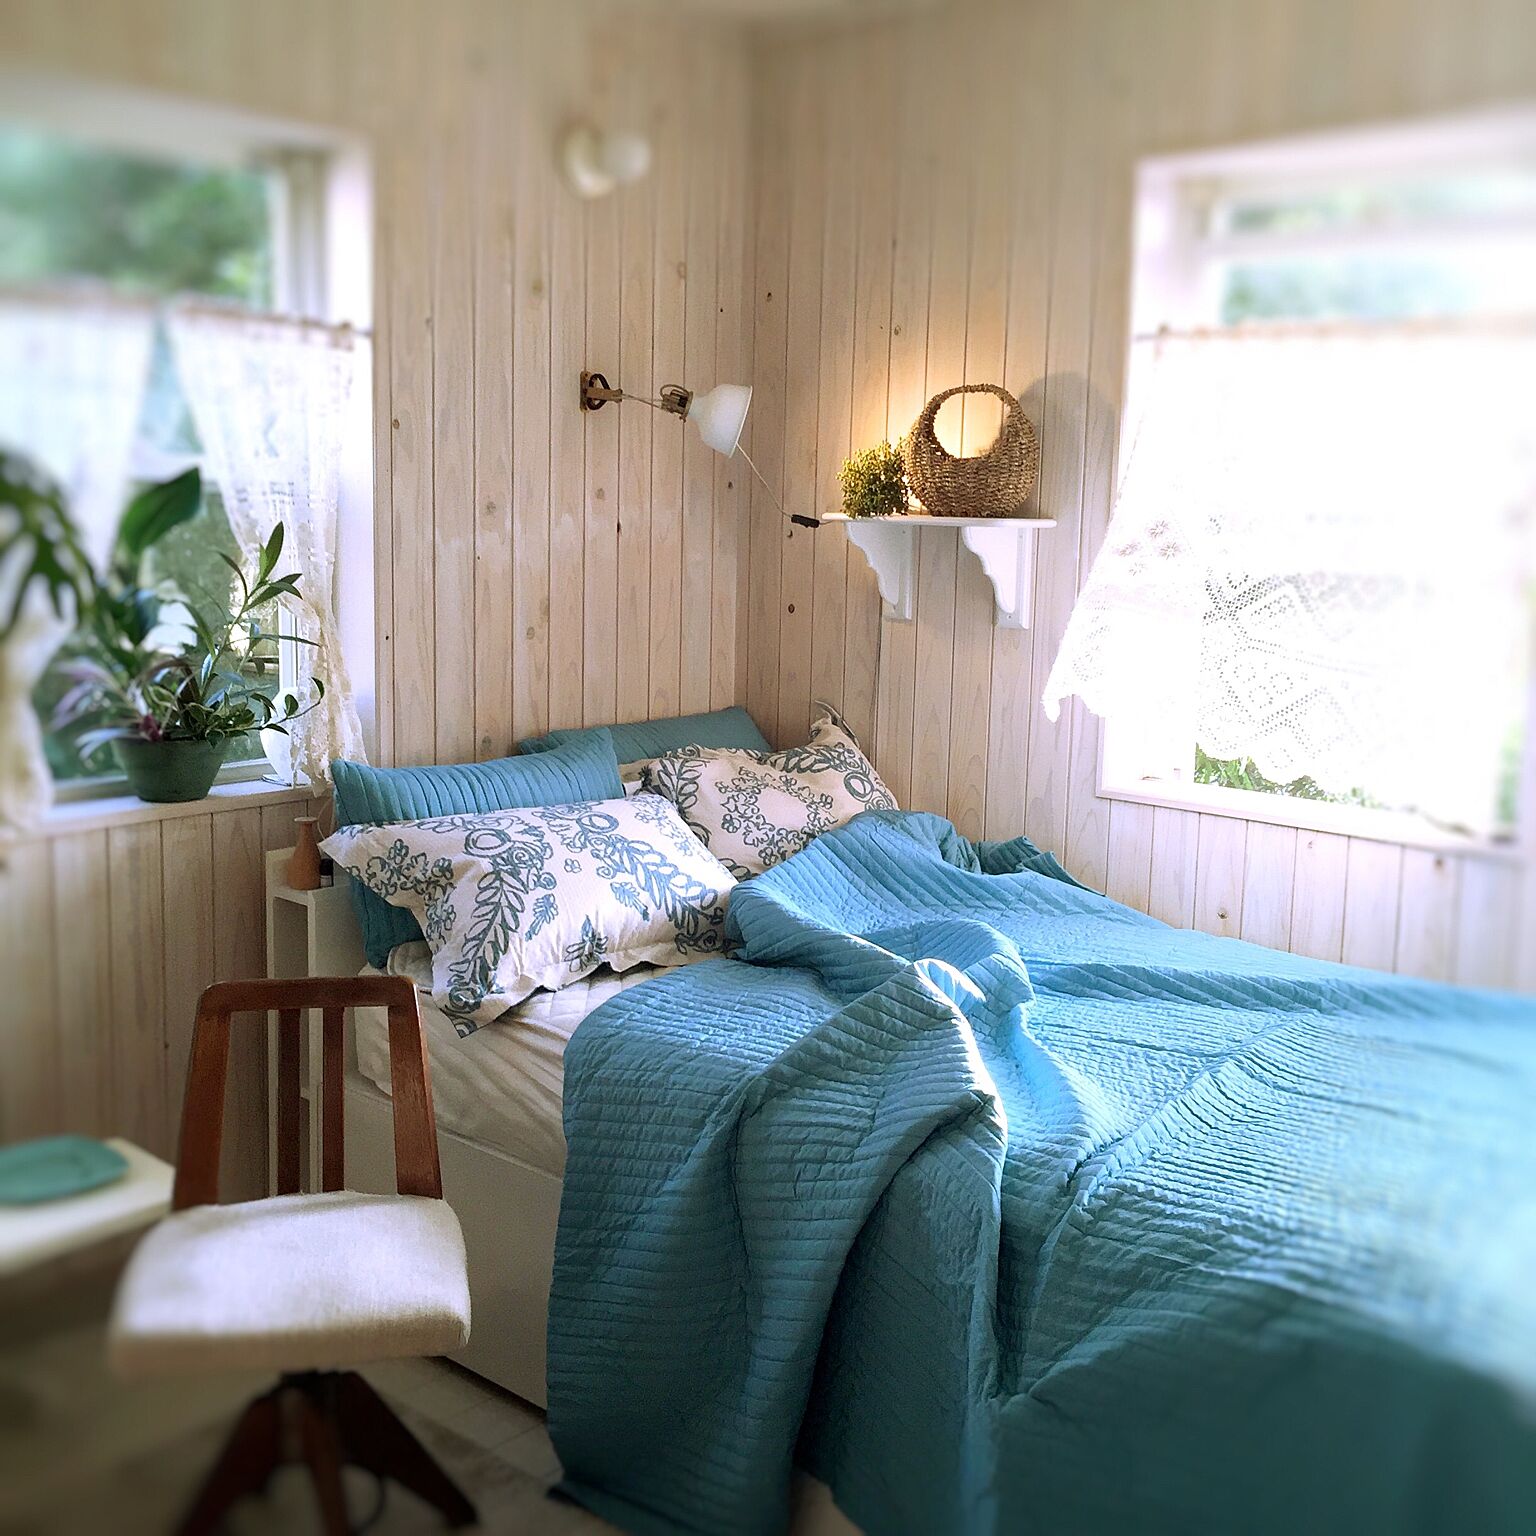 夏を快適に過ごすベッドルームの作り方 10のコツ Roomclip Mag 暮らしとインテリアのwebマガジン